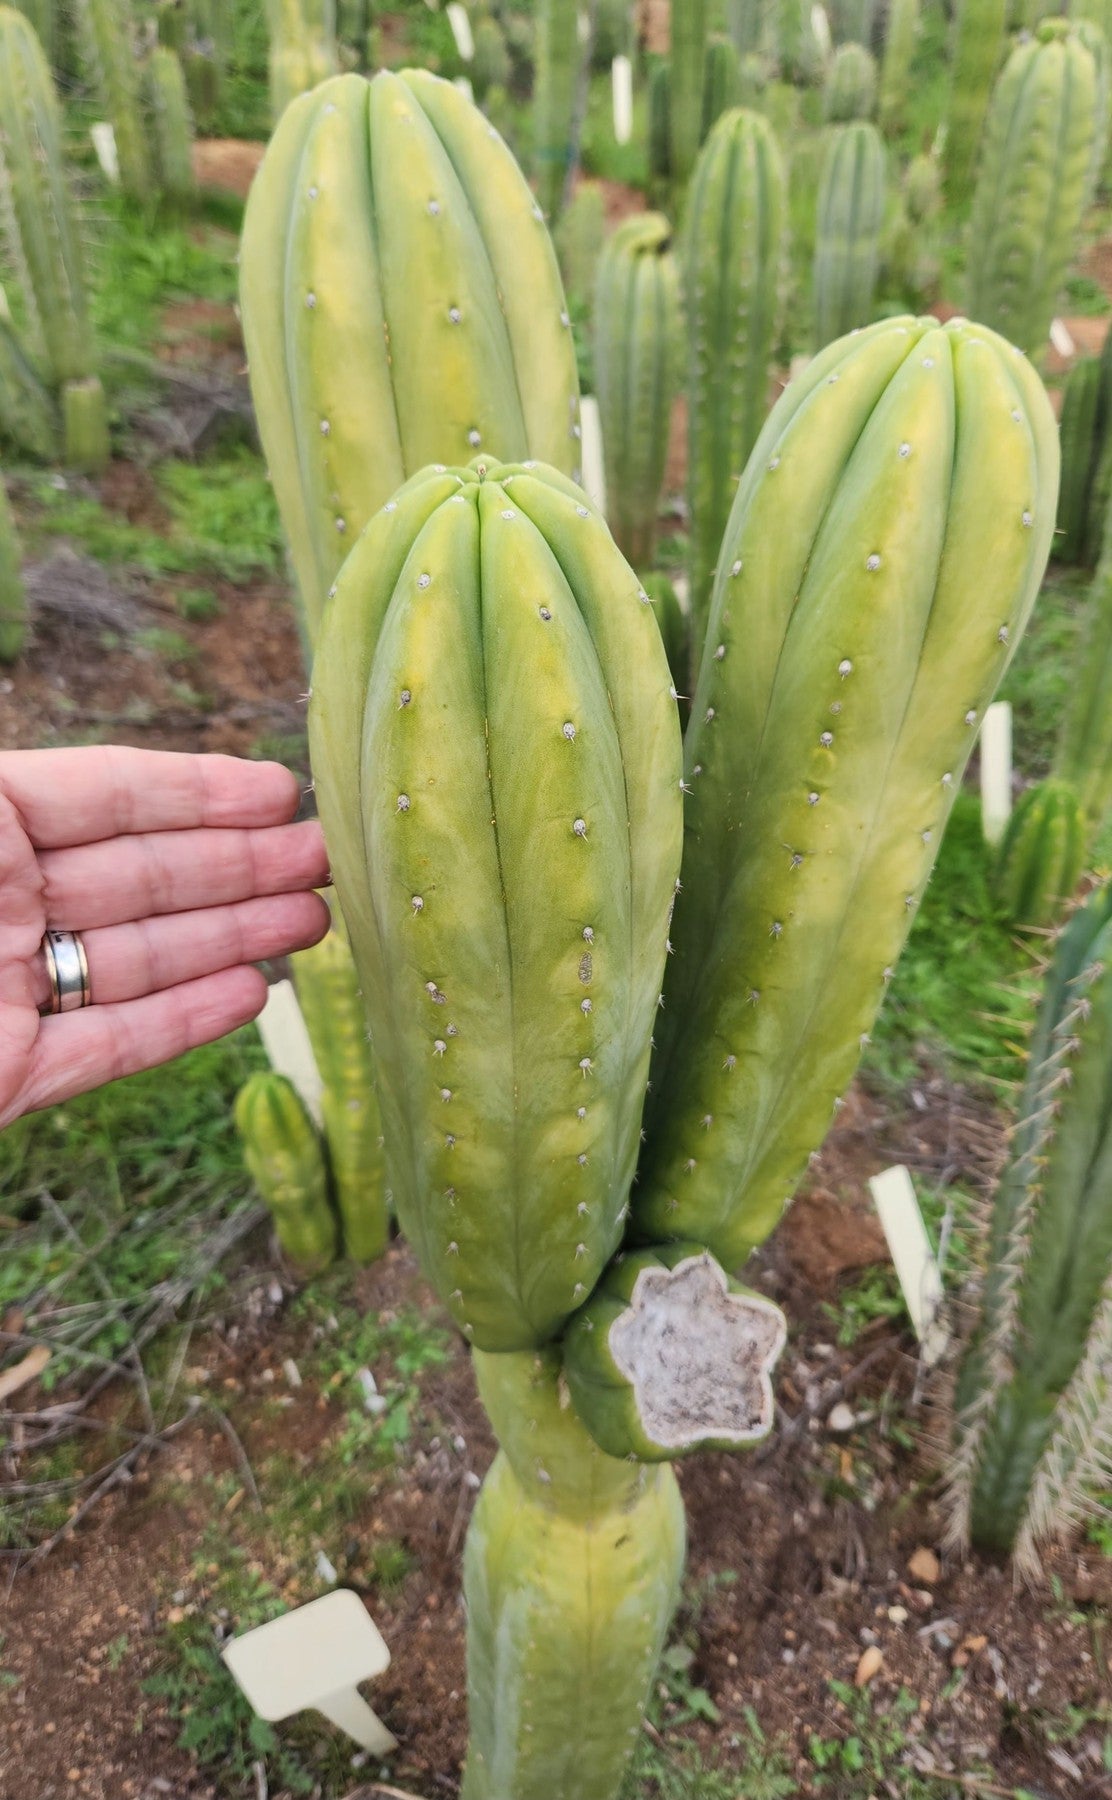 #EC303 EXACT Trichocereus Pachanoi Chancayllo Clone cactus cutting 8"-Cactus - Large - Exact-The Succulent Source